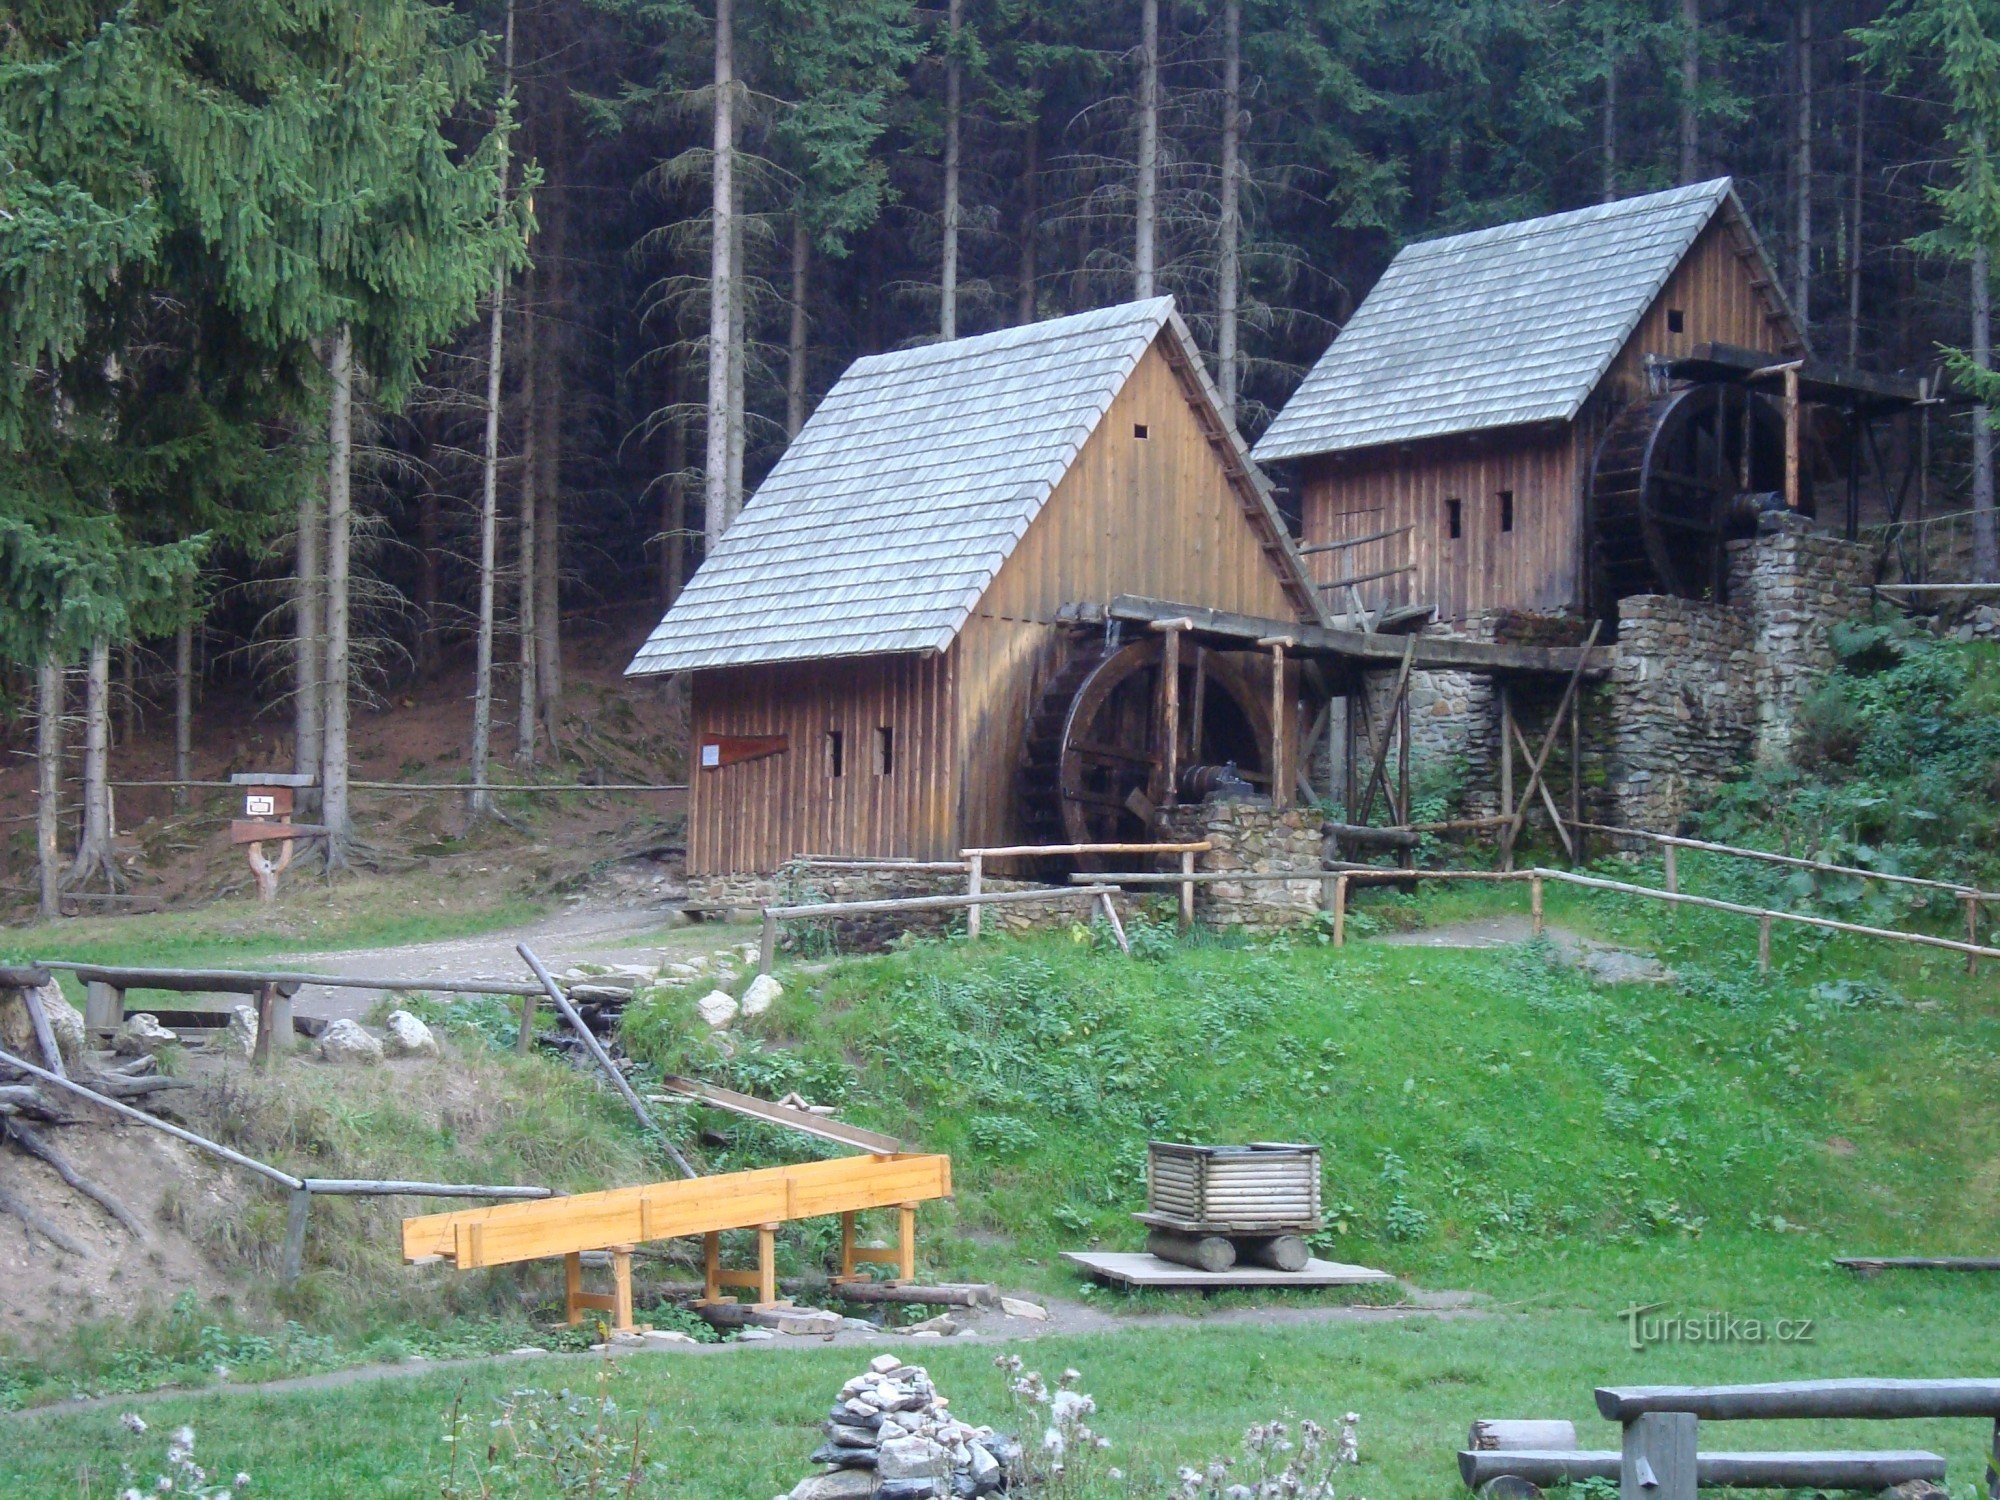 Rudarski muzej na otvorenom u blizini Zlatnih planina - drvene mlinice za rudaču zlata - Fotografija: Ulrych Mir.